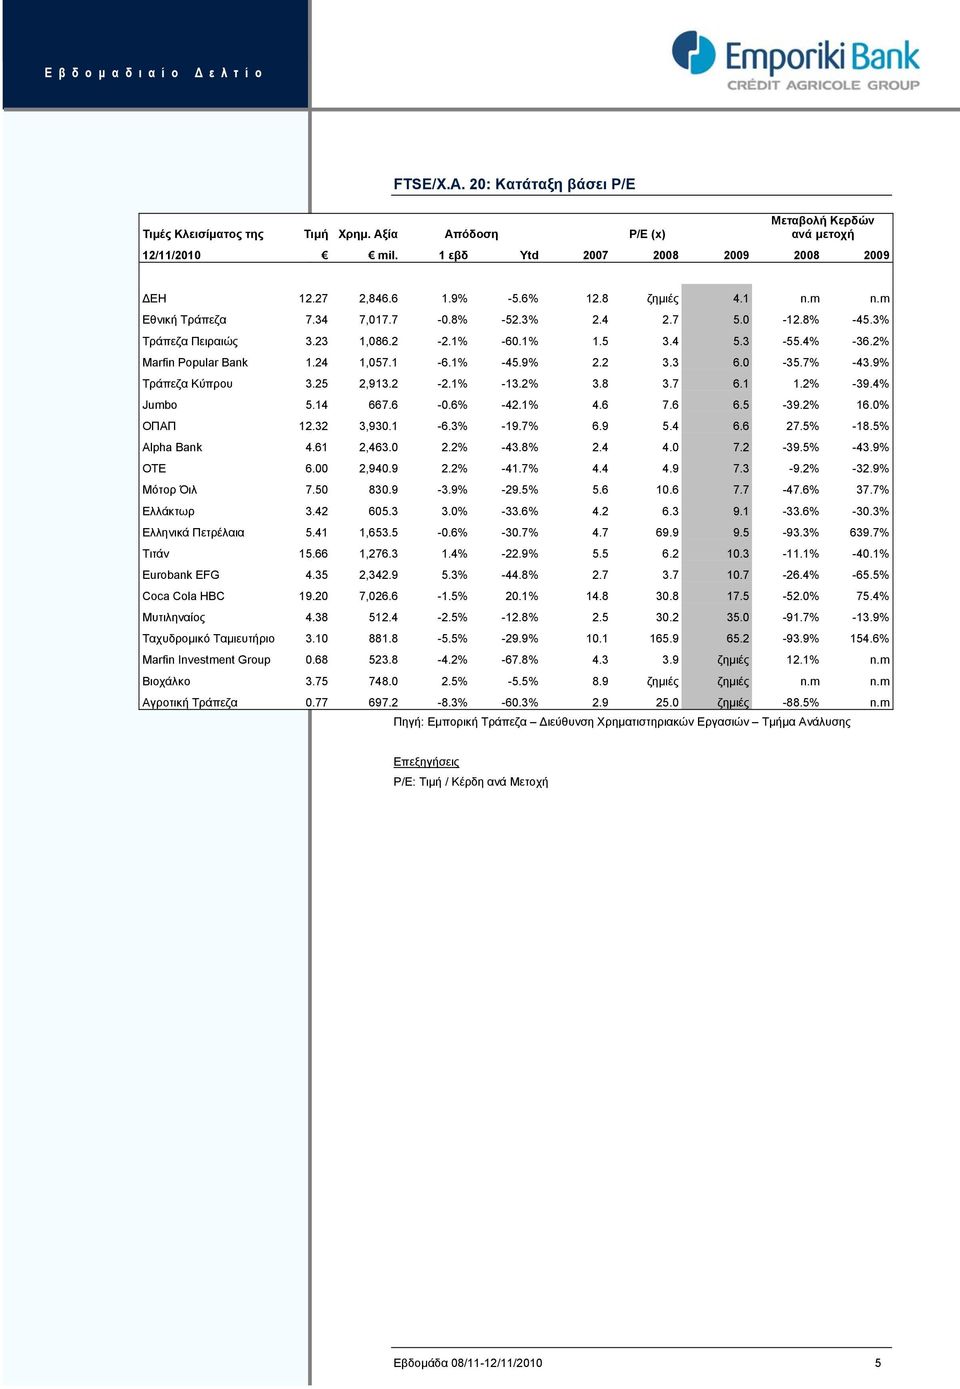 2 3.3 6.0-35.7% -43.9% Τράπεζα Κύπρου 3.25 2,913.2-2.1% -13.2% 3.8 3.7 6.1 1.2% -39.4% Jumbo 5.14 667.6-0.6% -42.1% 4.6 7.6 6.5-39.2% 16.0% ΟΠΑΠ 12.32 3,930.1-6.3% -19.7% 6.9 5.4 6.6 27.5% -18.